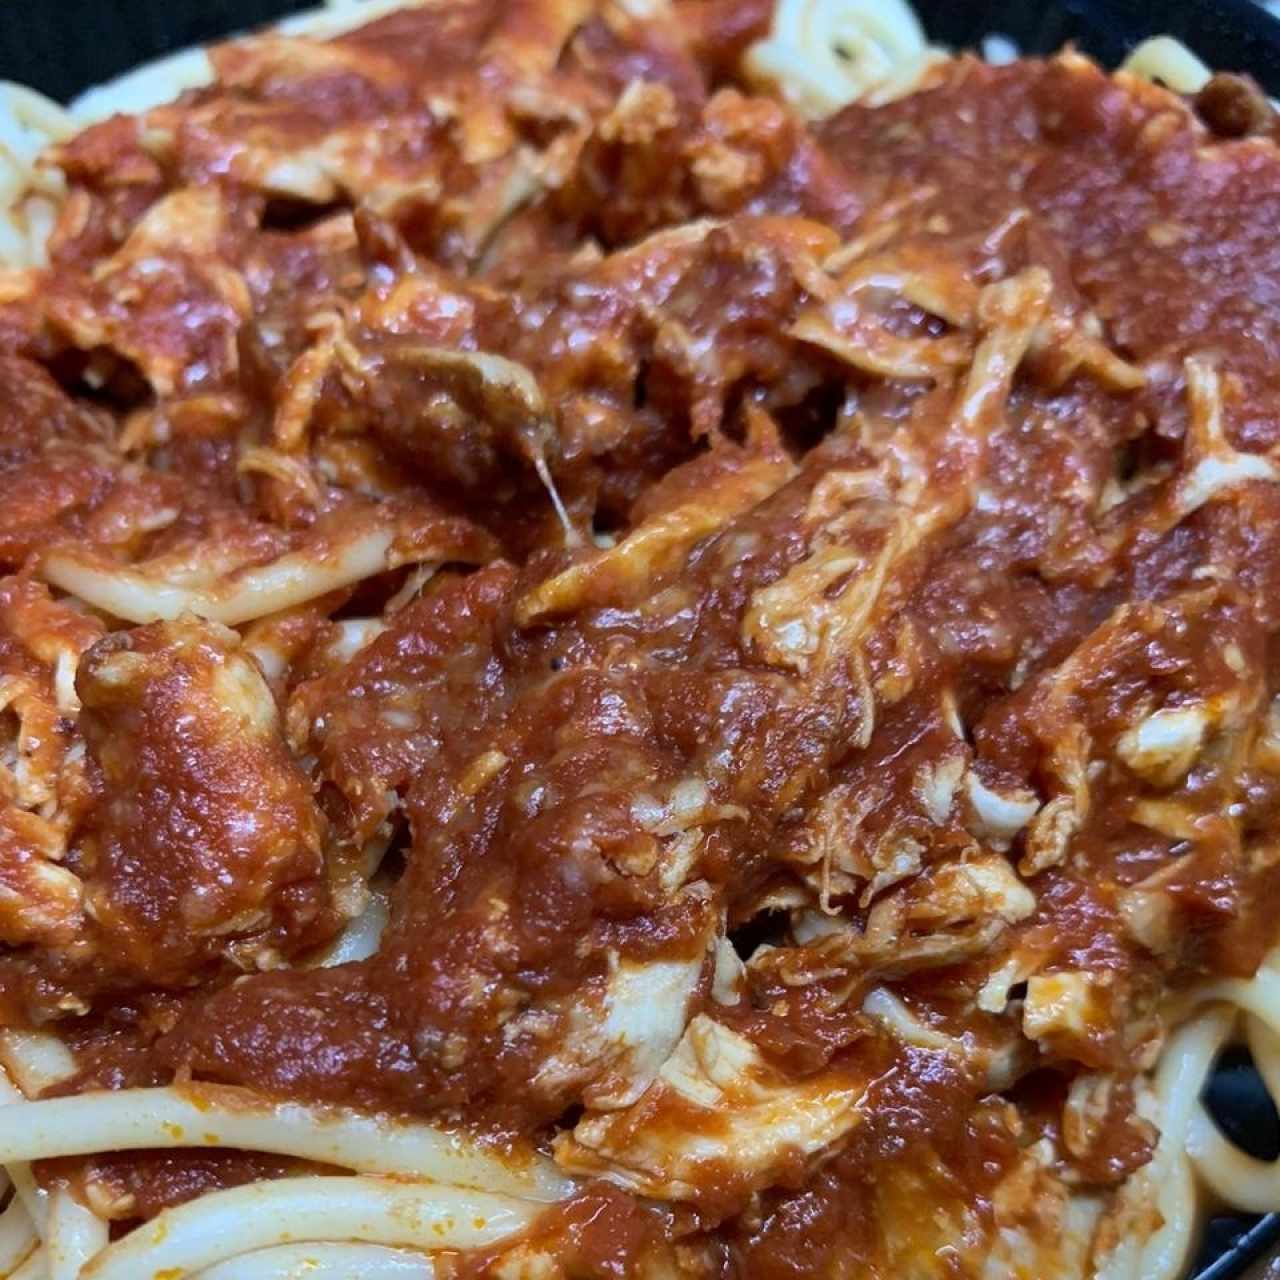 Spaghetti con pollo deshuesado